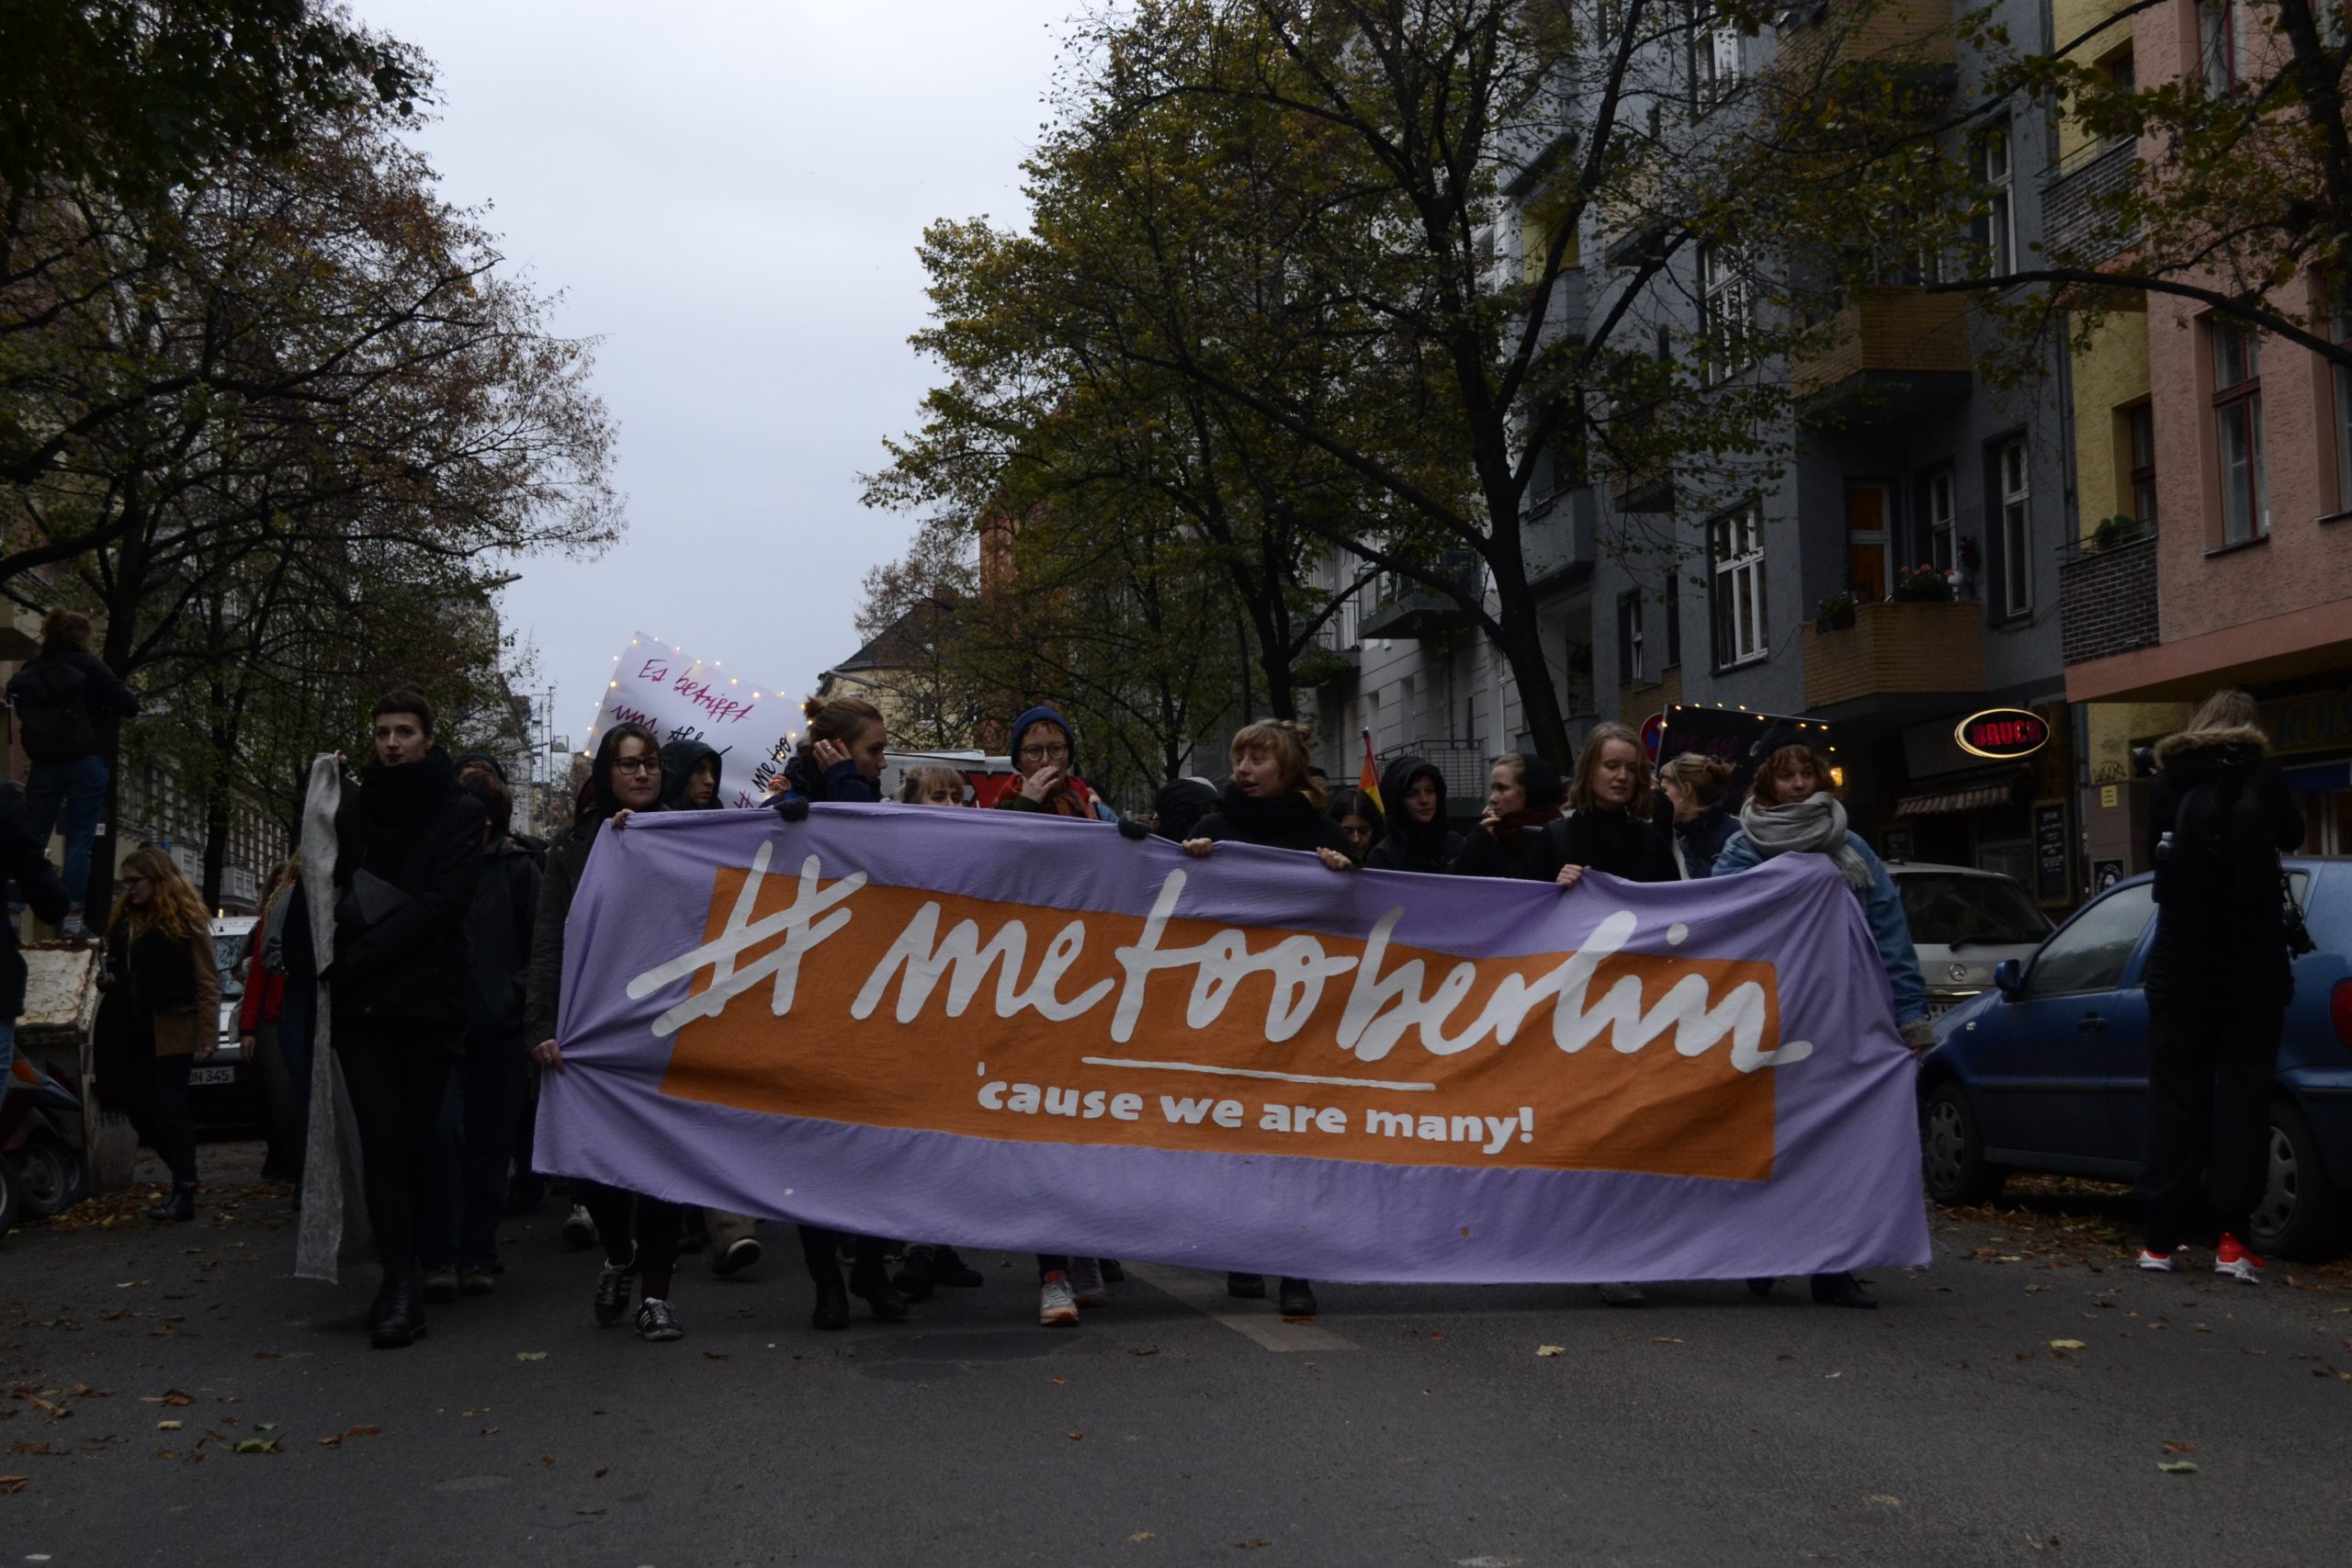 [Fotogalerie] 1.000 Menschen bei #metoo-Demonstration in Berlin